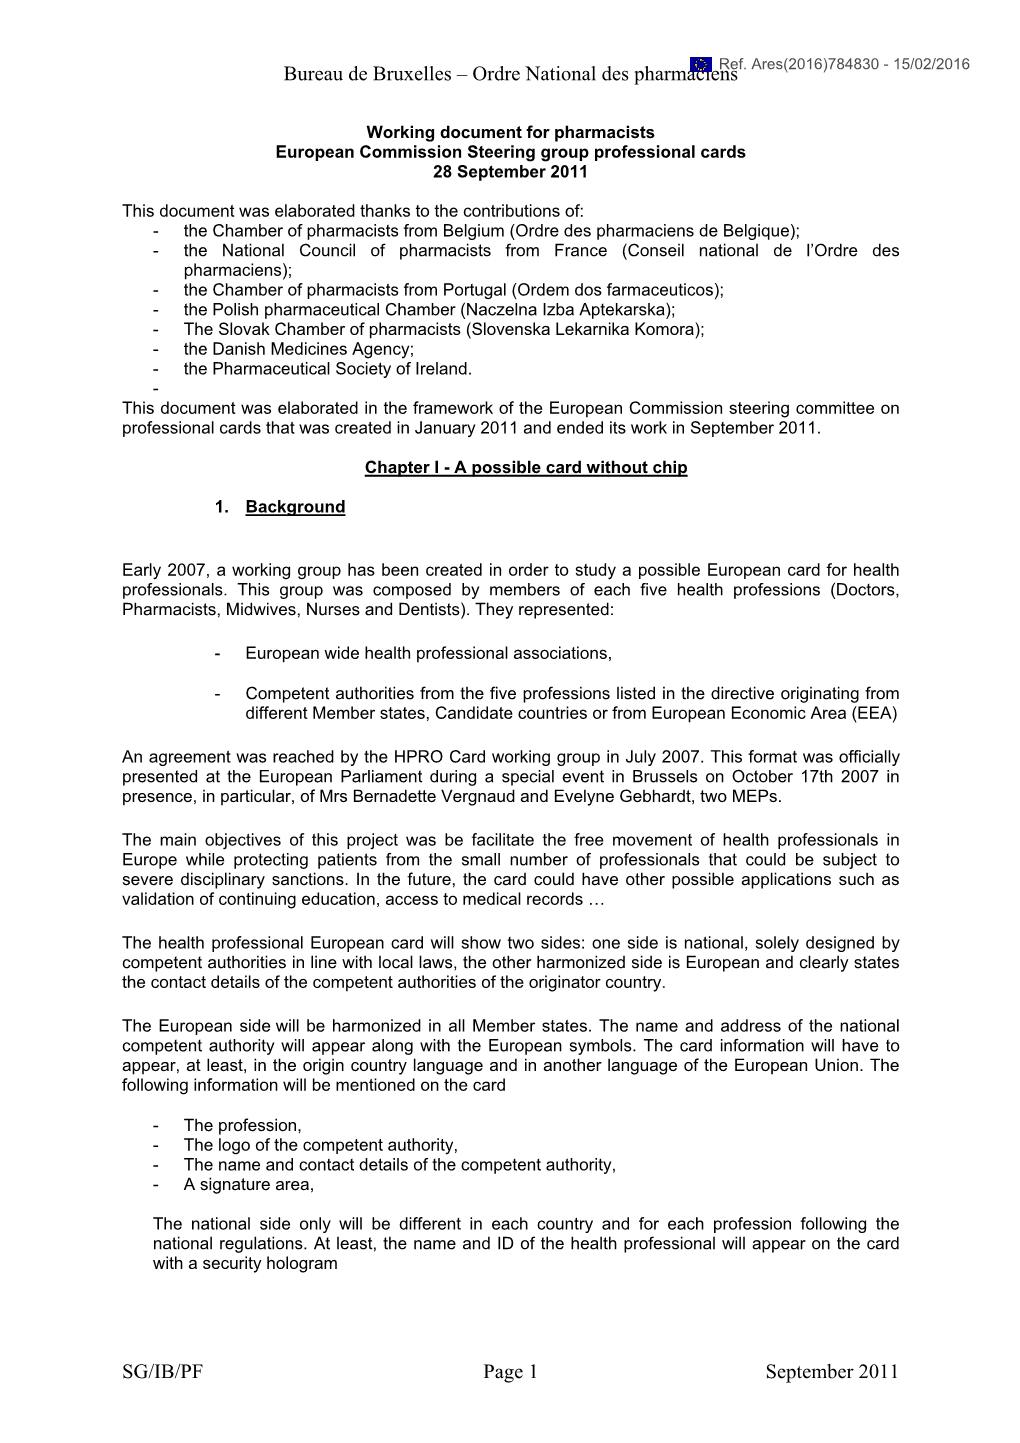 Bureau De Bruxelles – Ordre National Des Pharmaciens SG/IB/PF Page 1